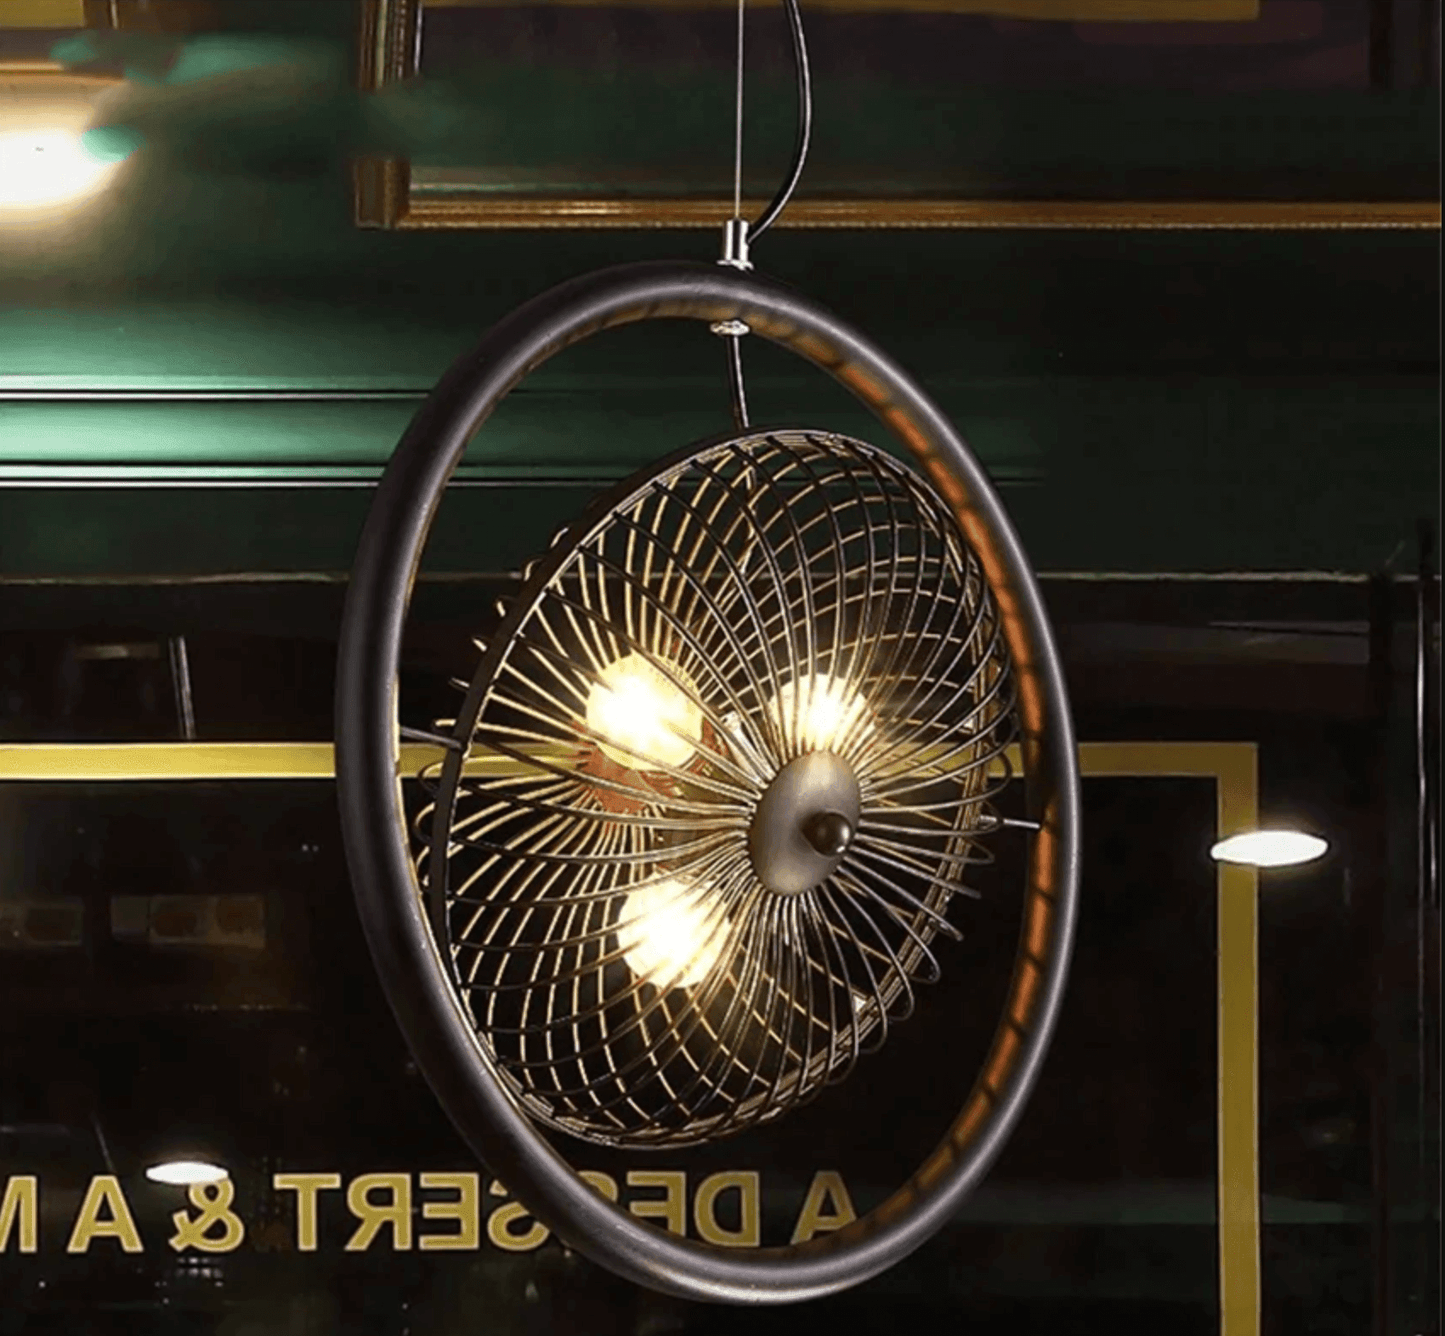 Vintage Iron Retro Fan Ceiling Droplight Chandelier Lamp